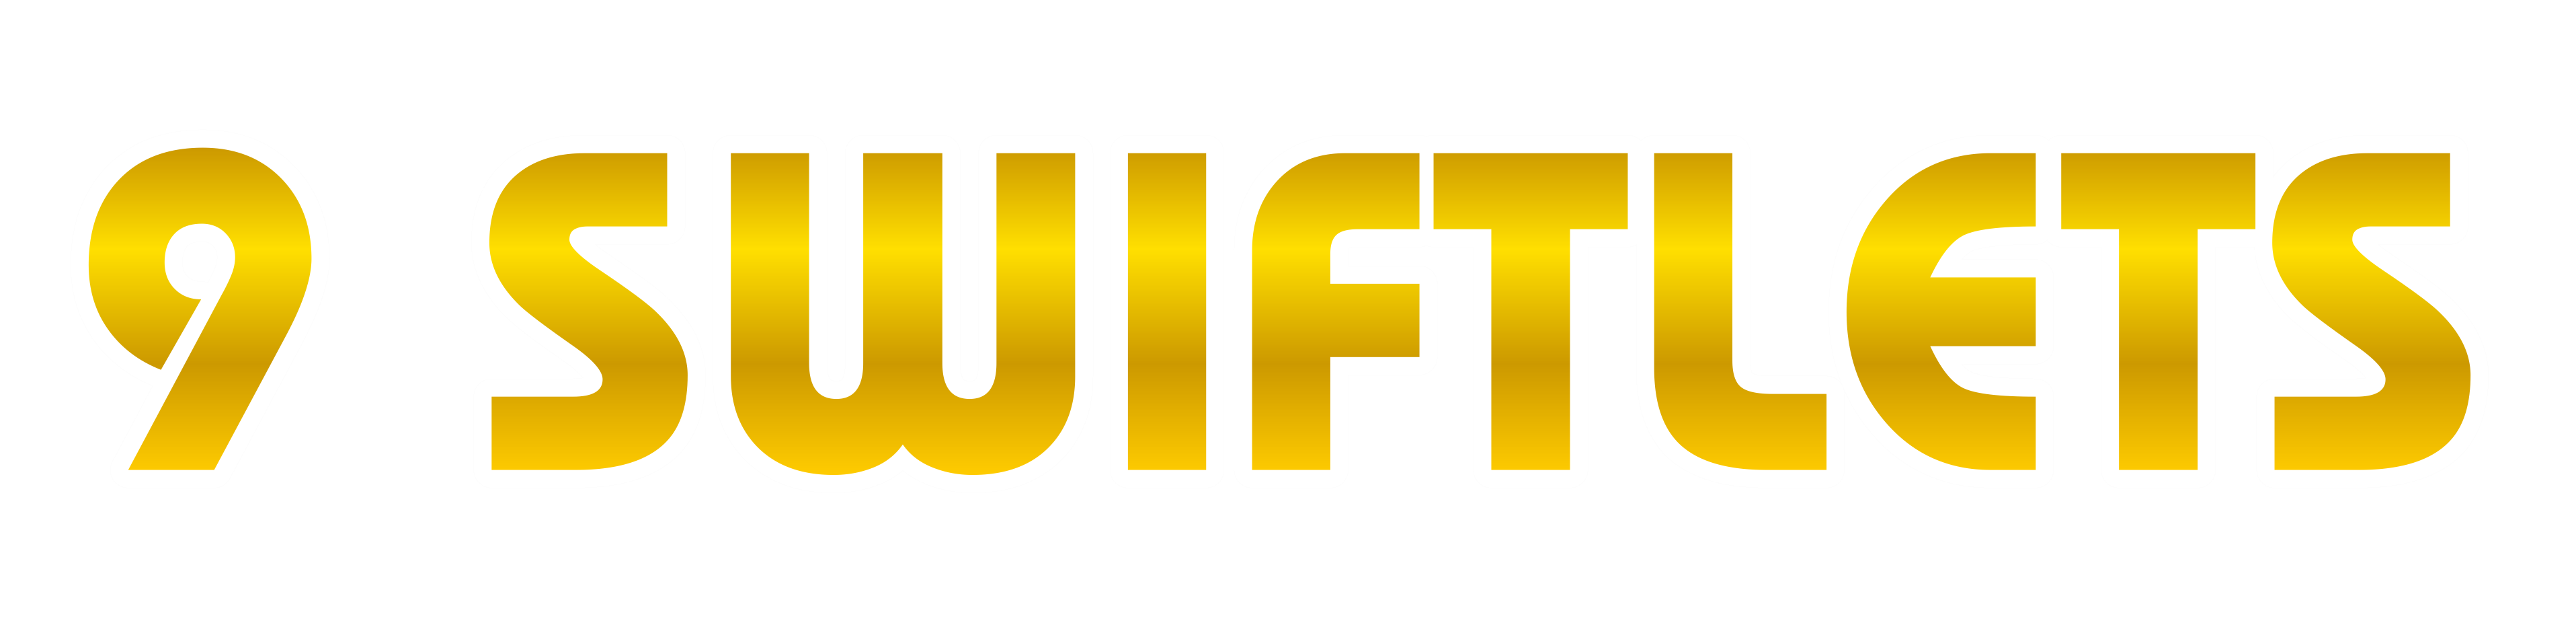 9 Swiftlets Logo